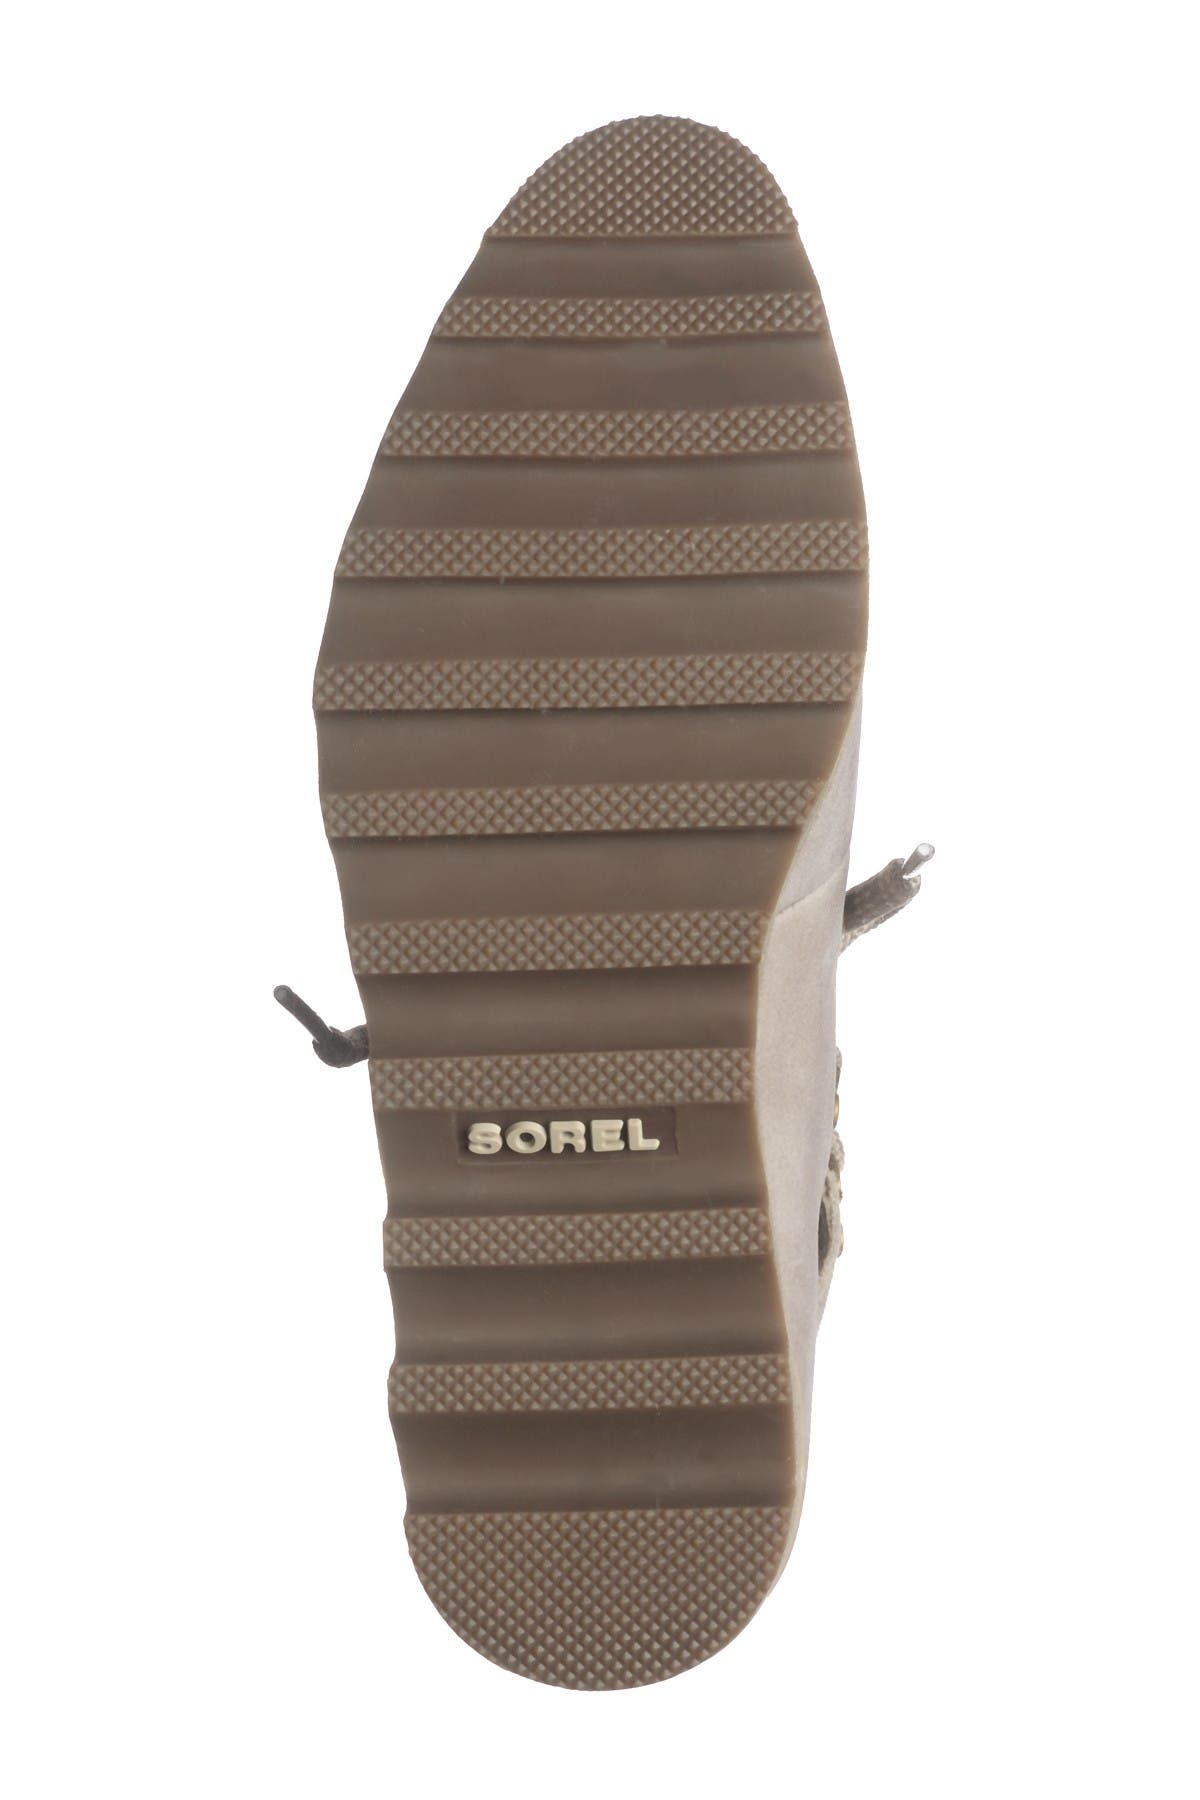 sorel women's sneakchic alpine booties